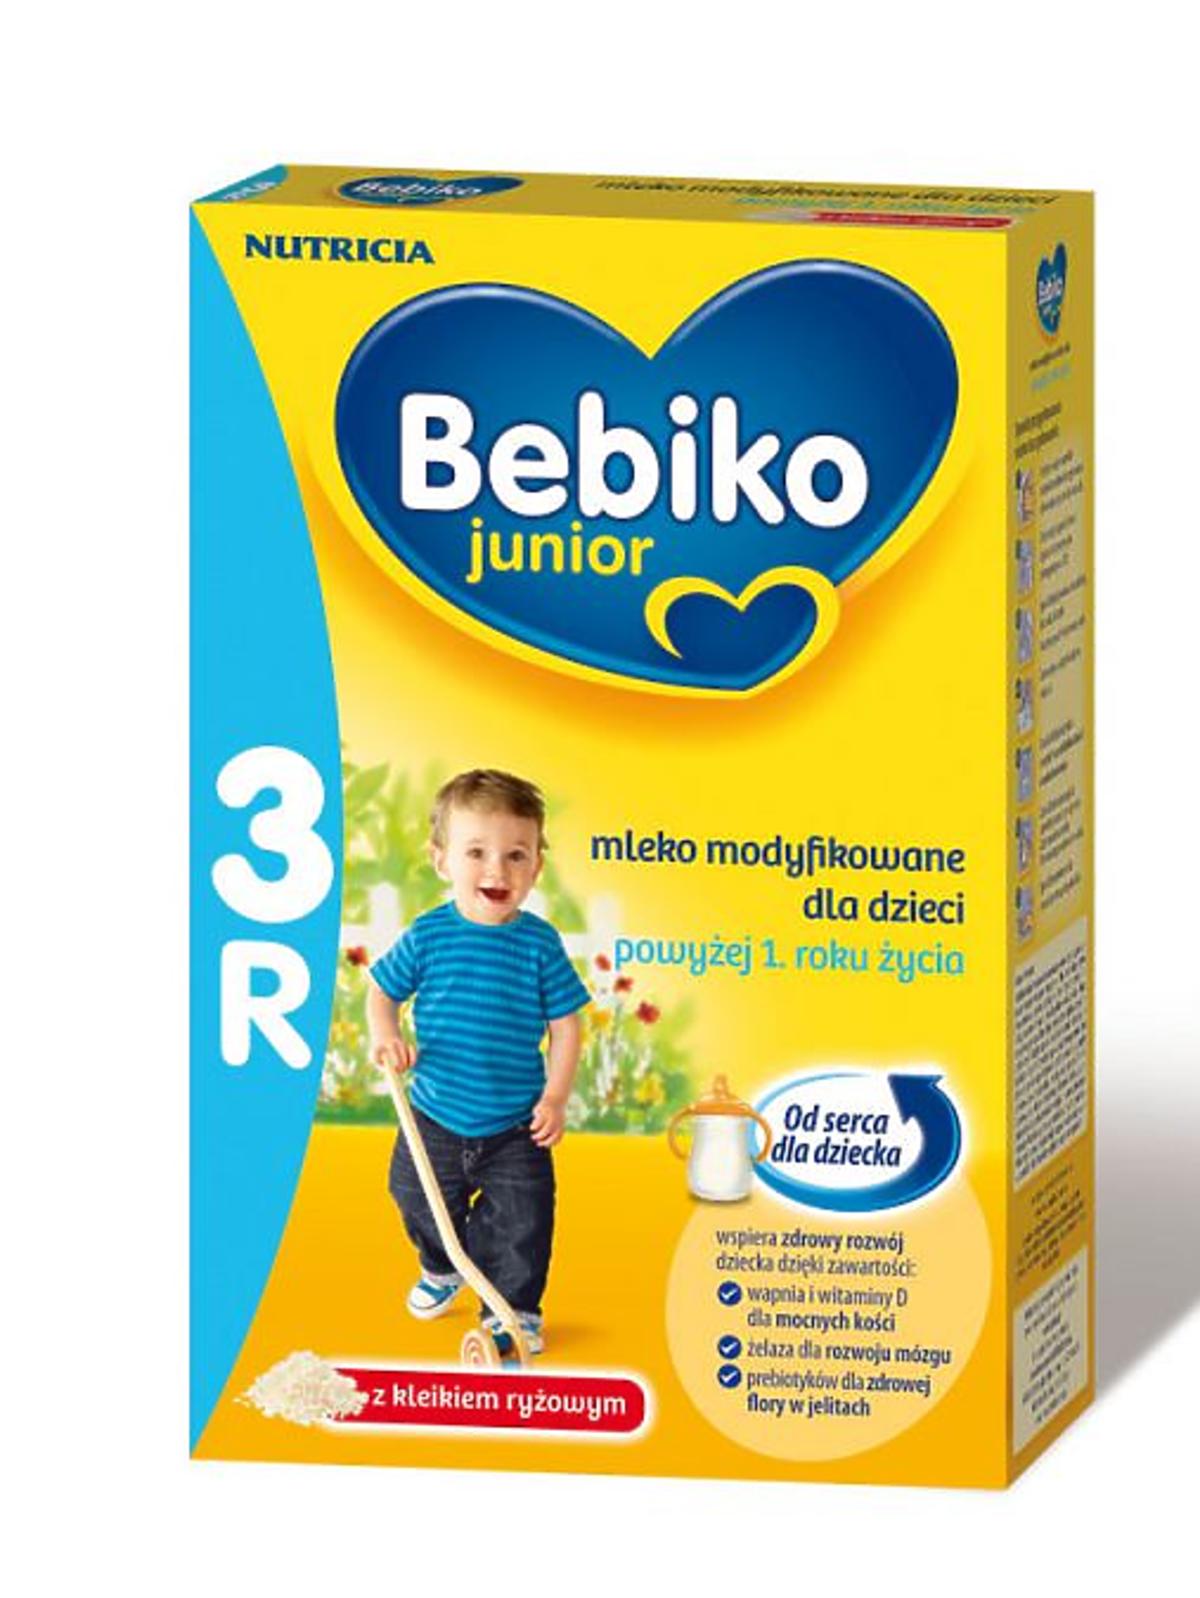 Bebiko-3R.jpg